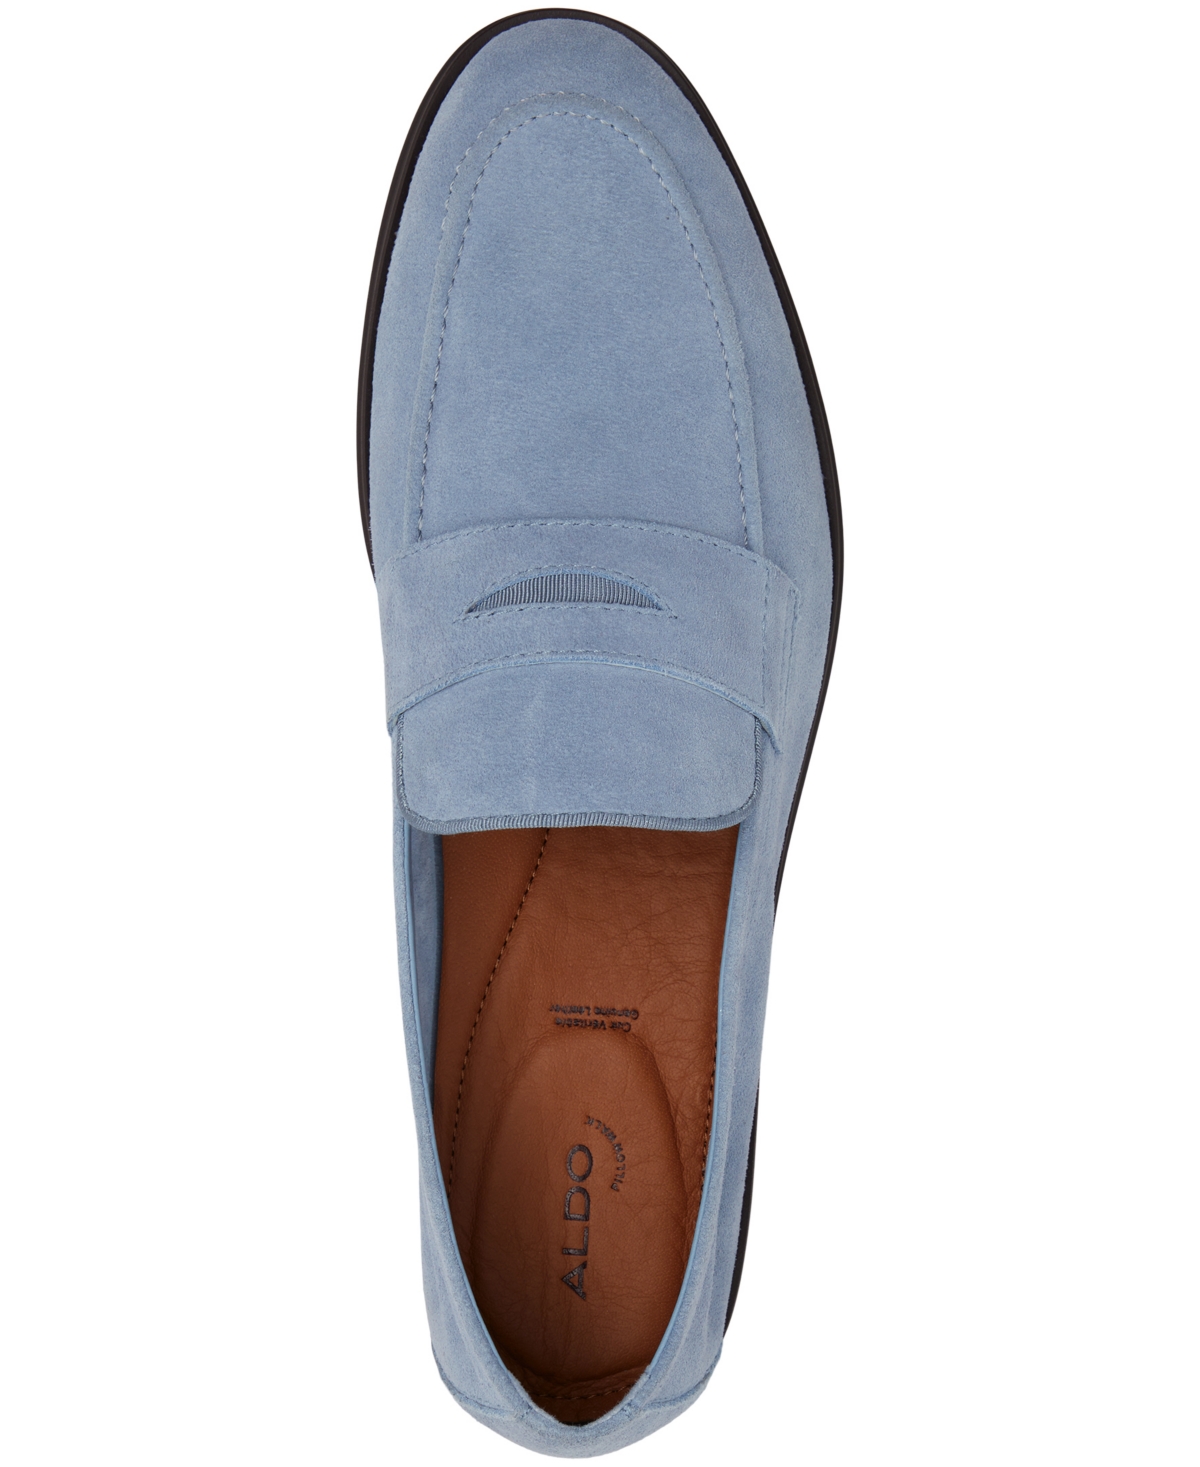 Shop Aldo Men's Journey Dress Loafer In Light Blue